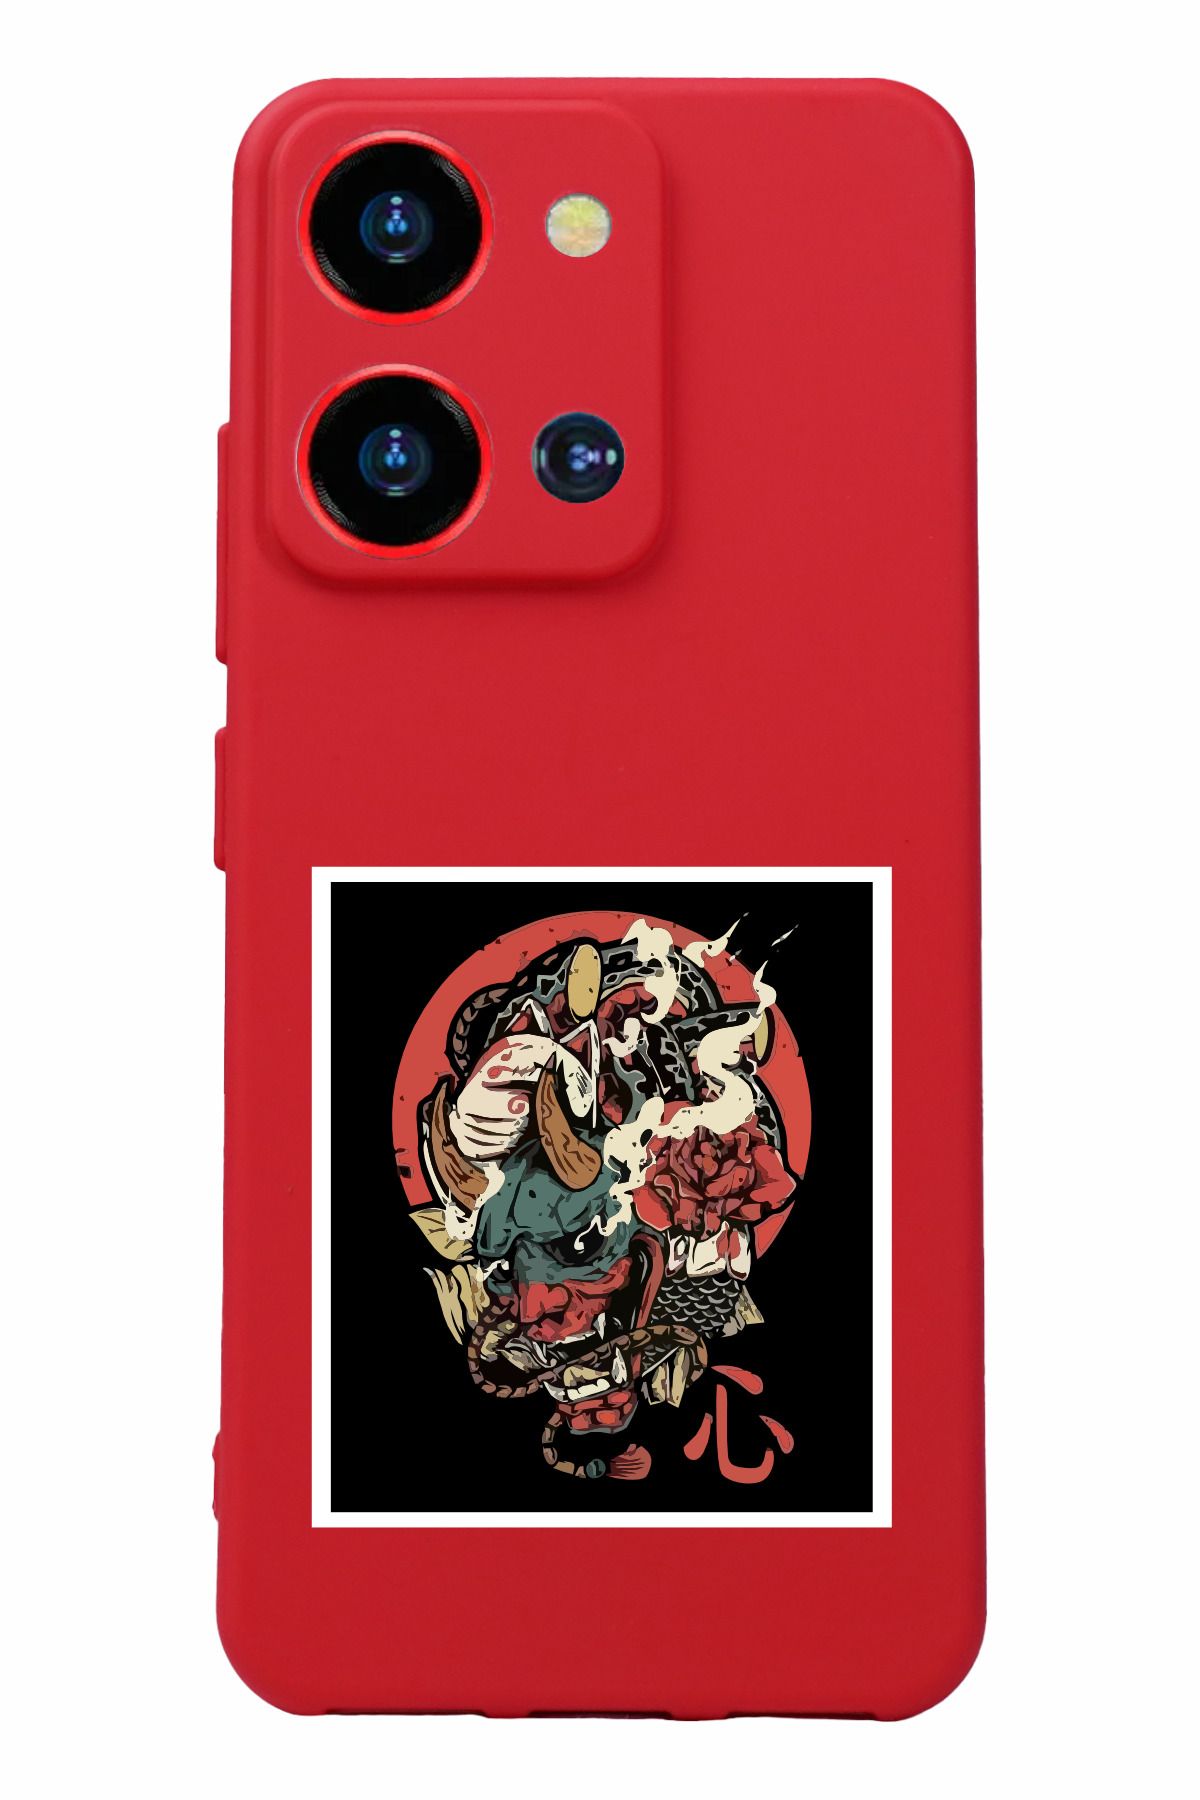 Reeder S19 Max Pro S Zoom Uyumlu Kamera Korumalı ve Tasarımlı Kırmızı Renk Silikon Kılıf